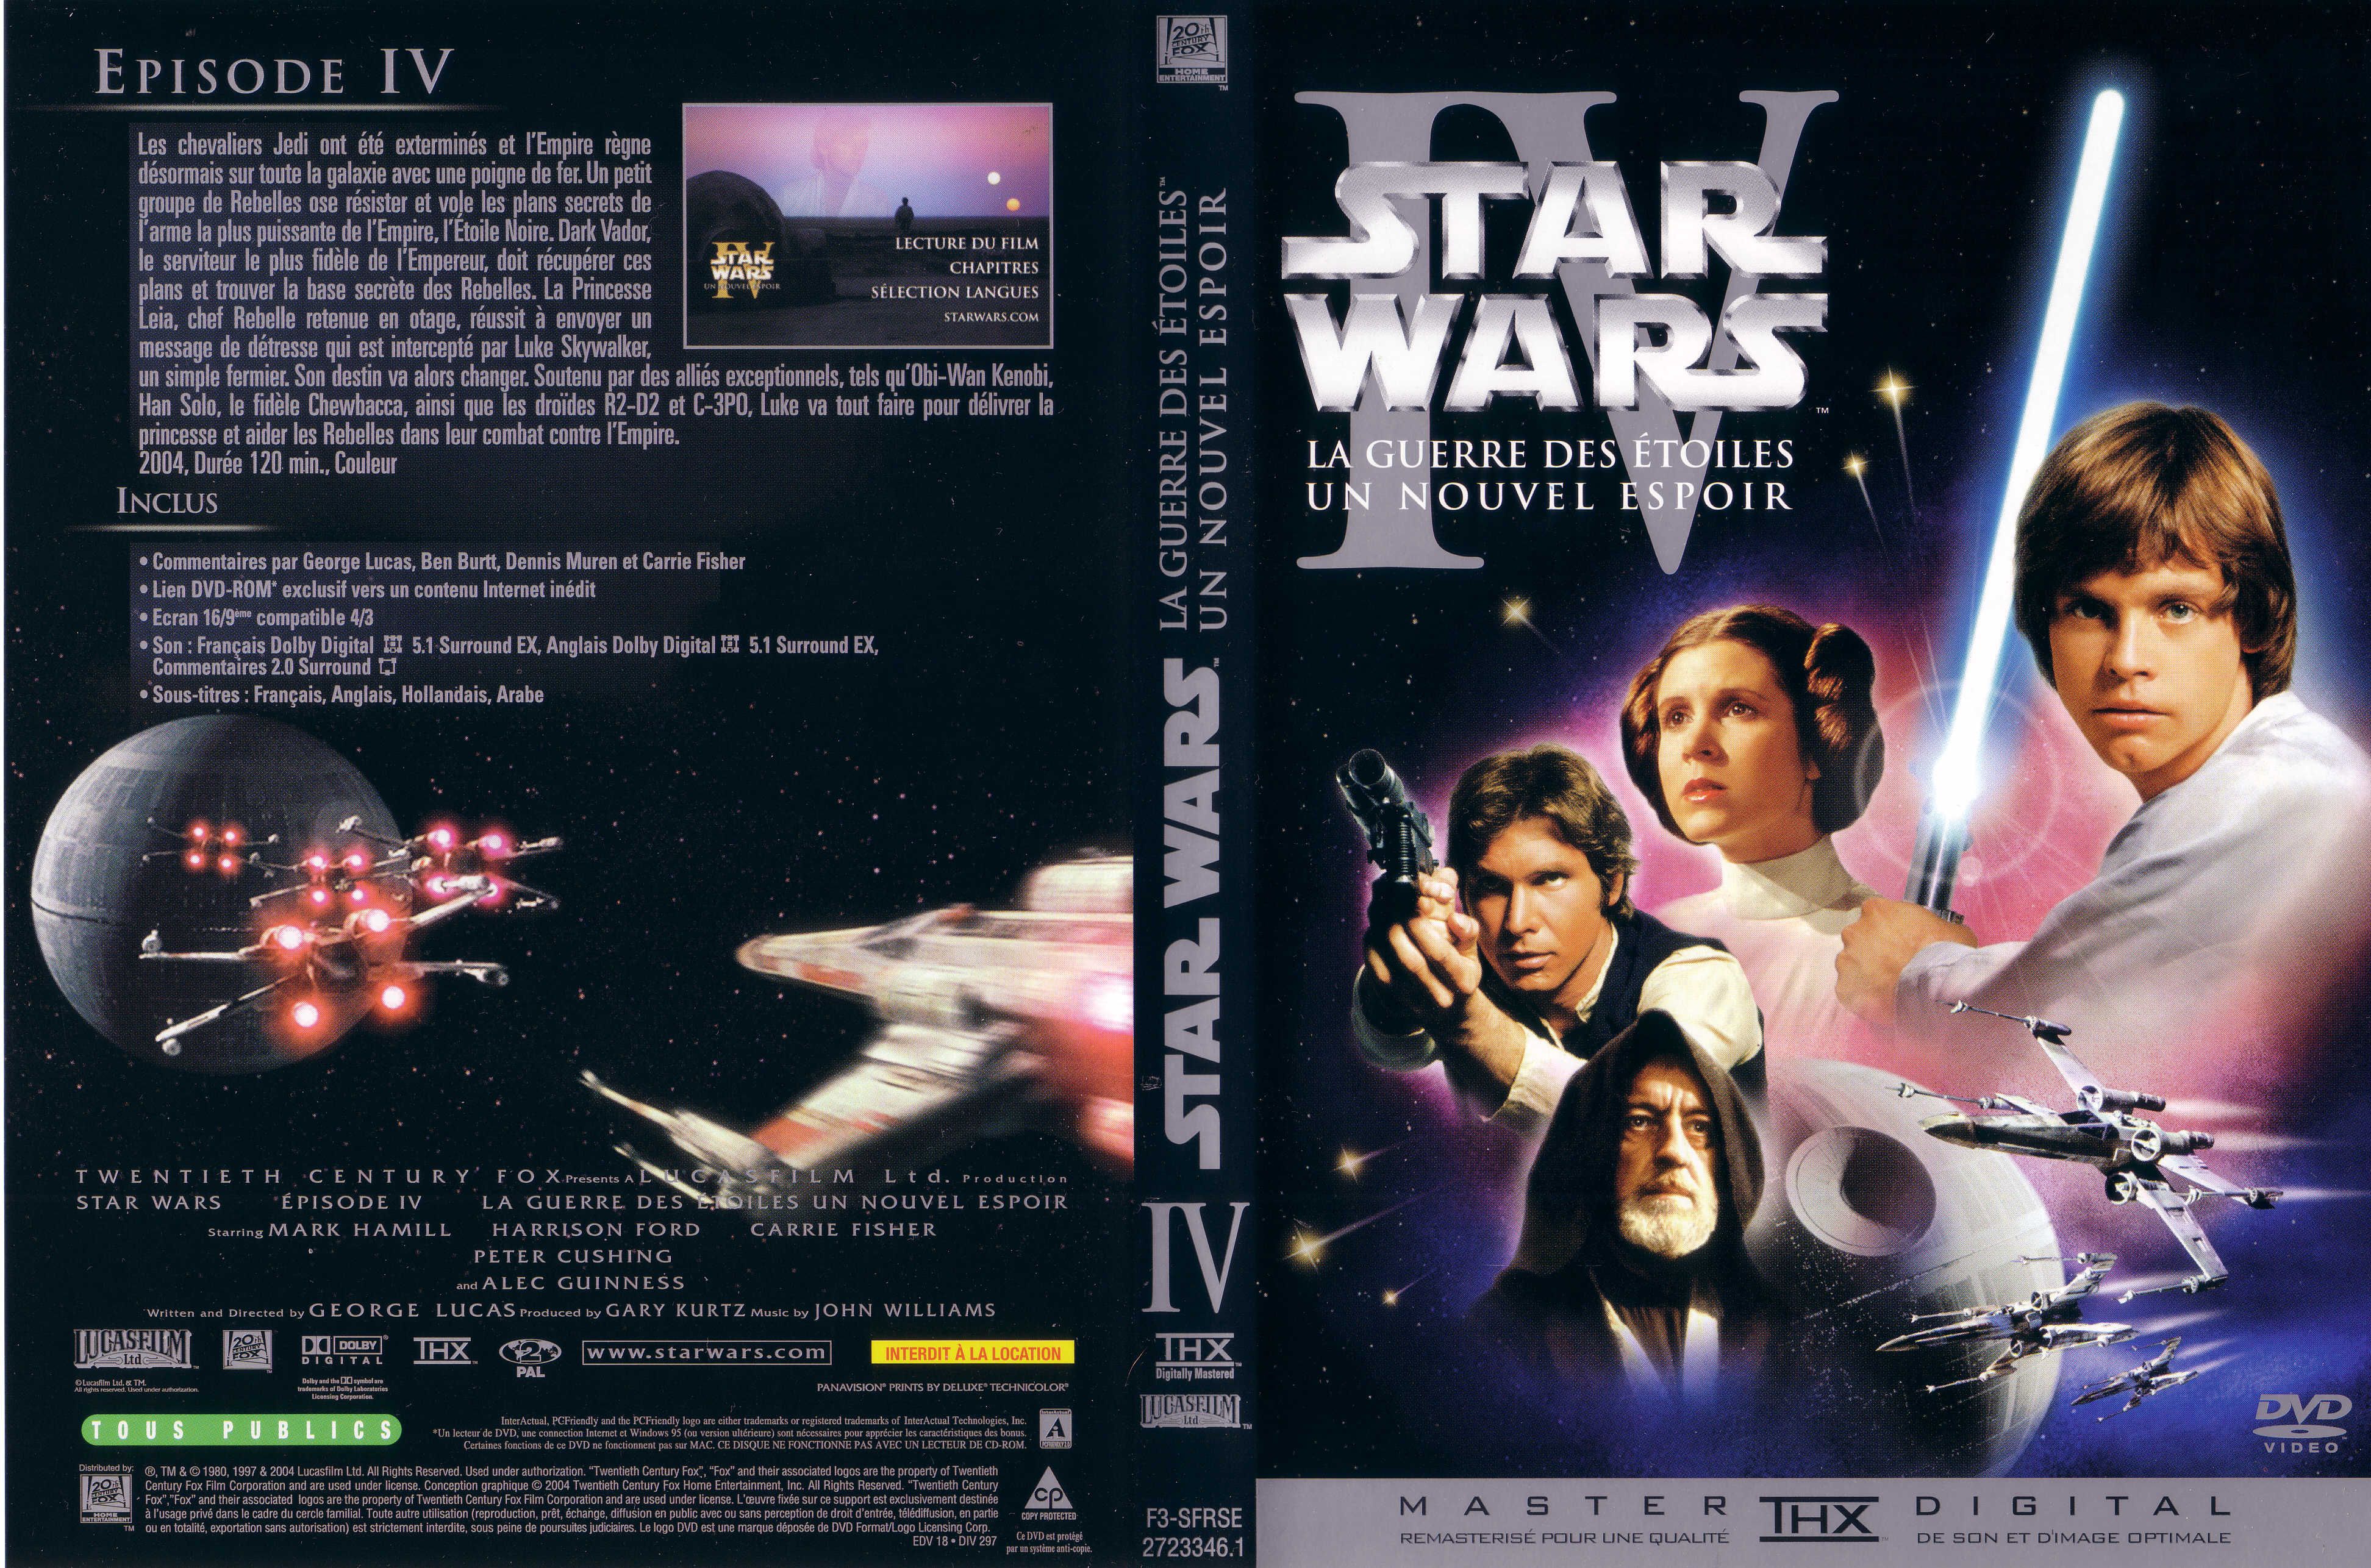 Jaquette DVD Star Wars La guerre des etoiles